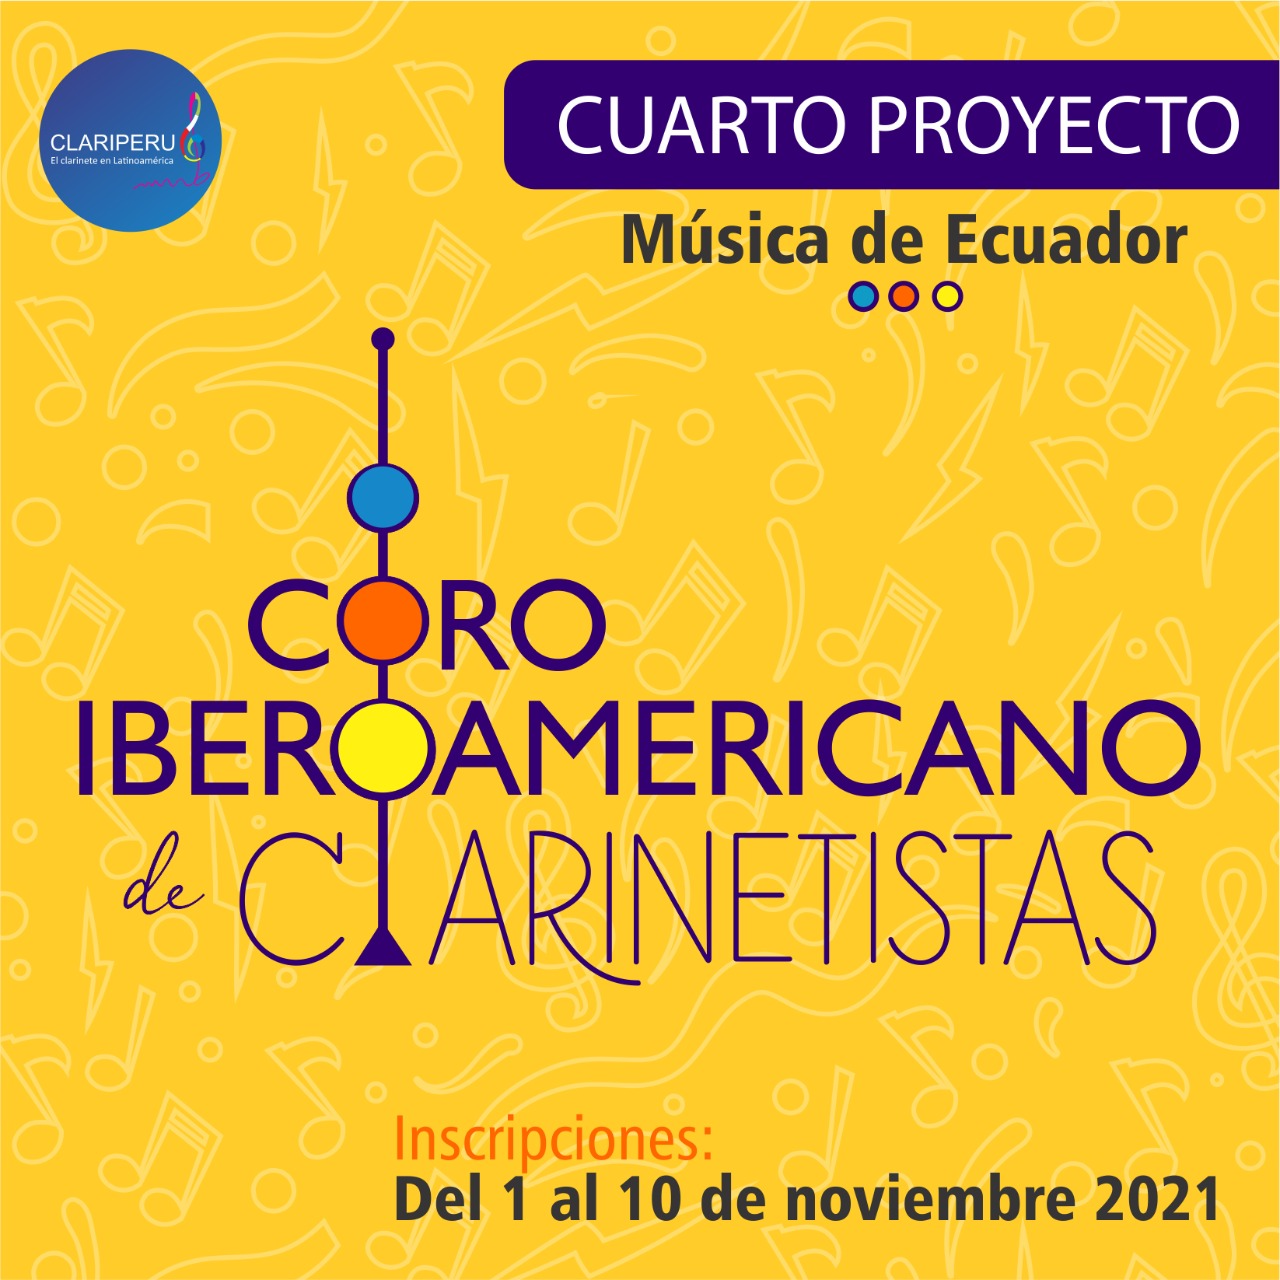 Coro Iberoamericano de Clarinetistas. proyecto internacional de CLARIPERU